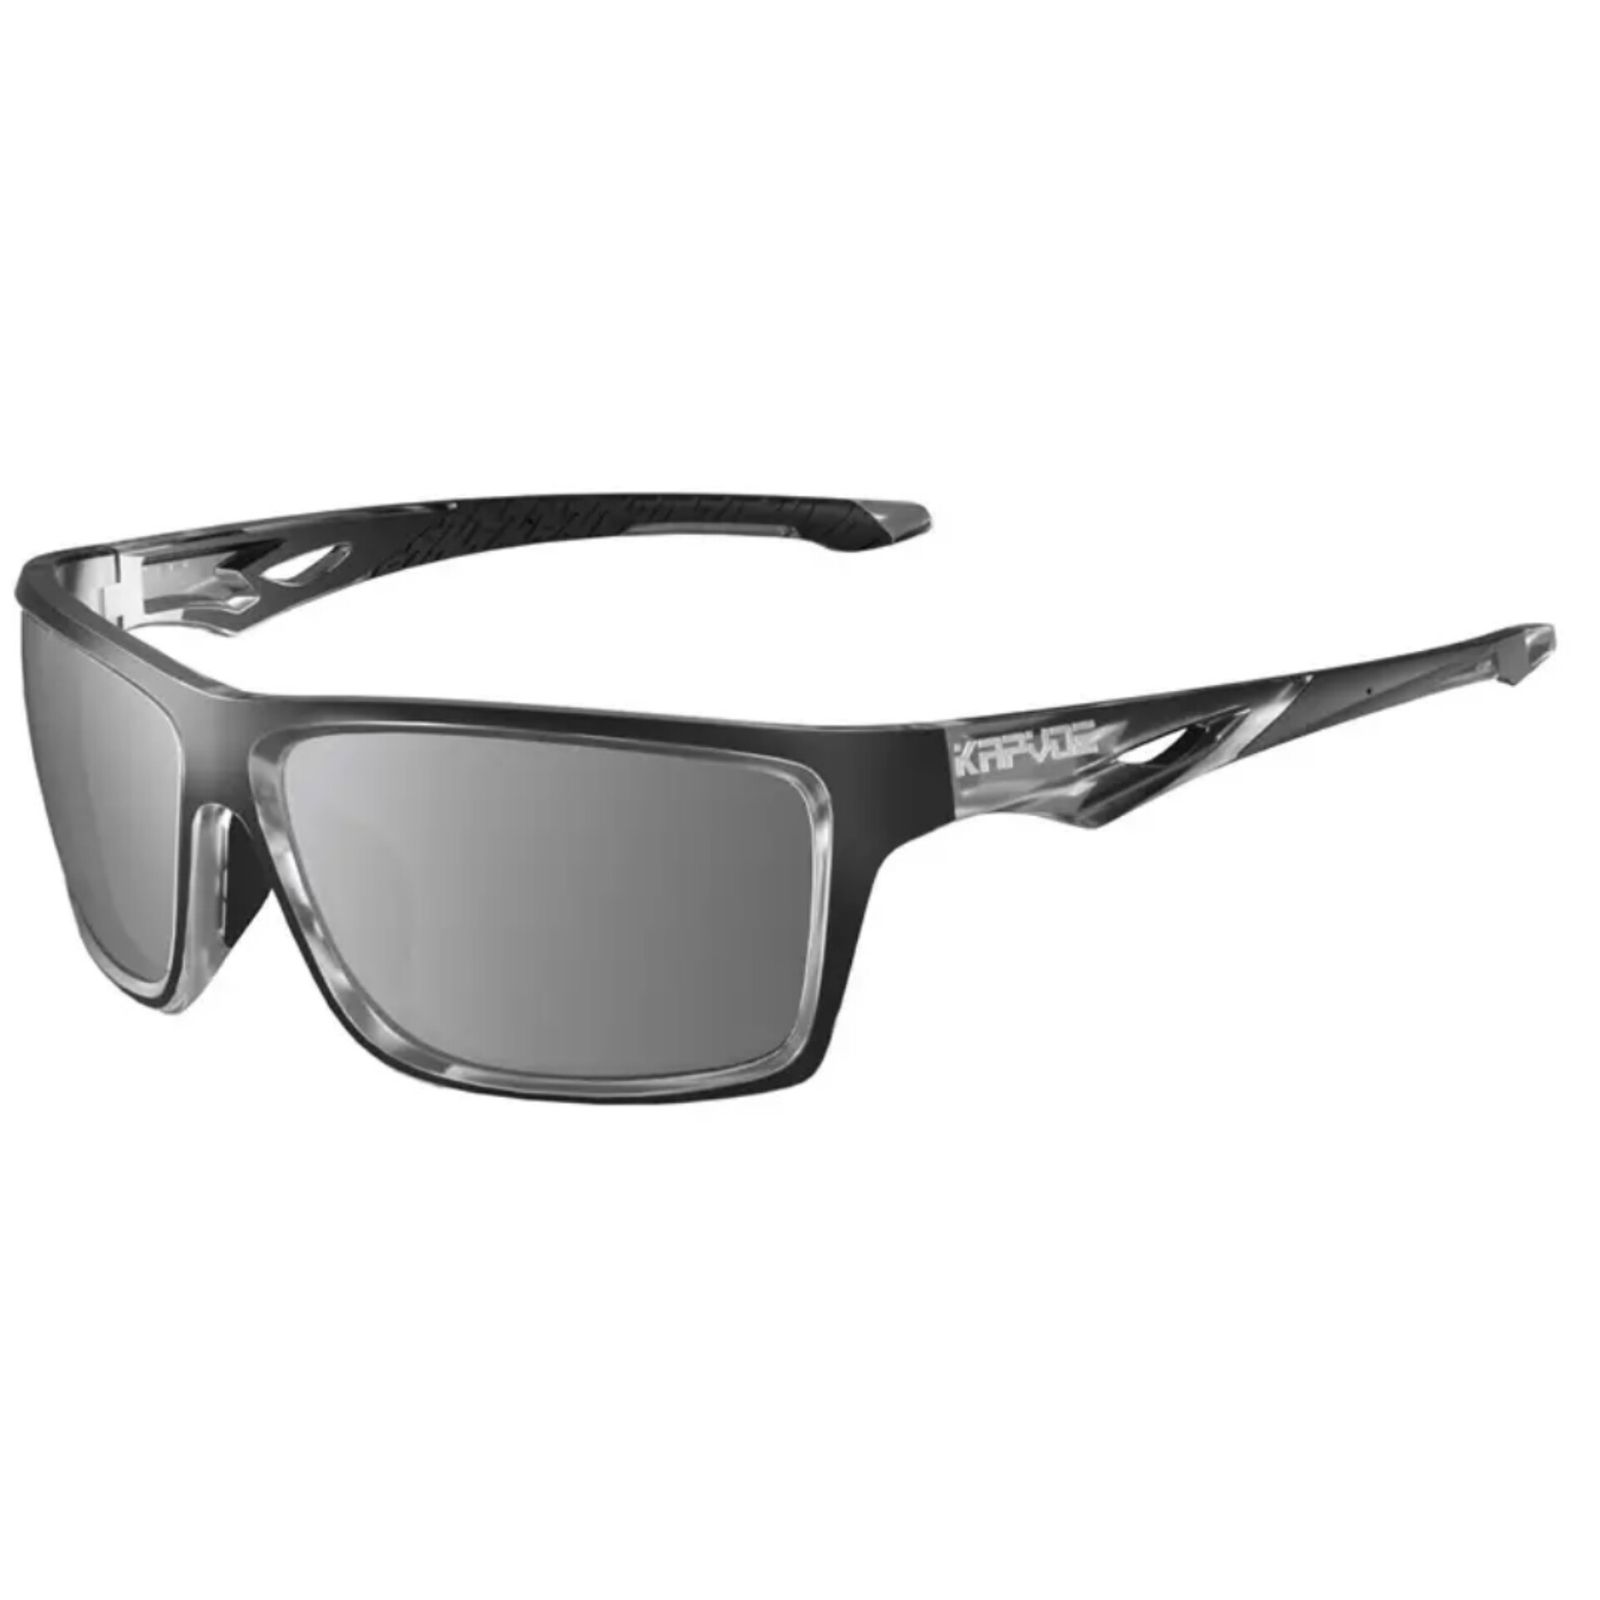 عینک ورزشی کپوو مدل X5-11 -  - 1